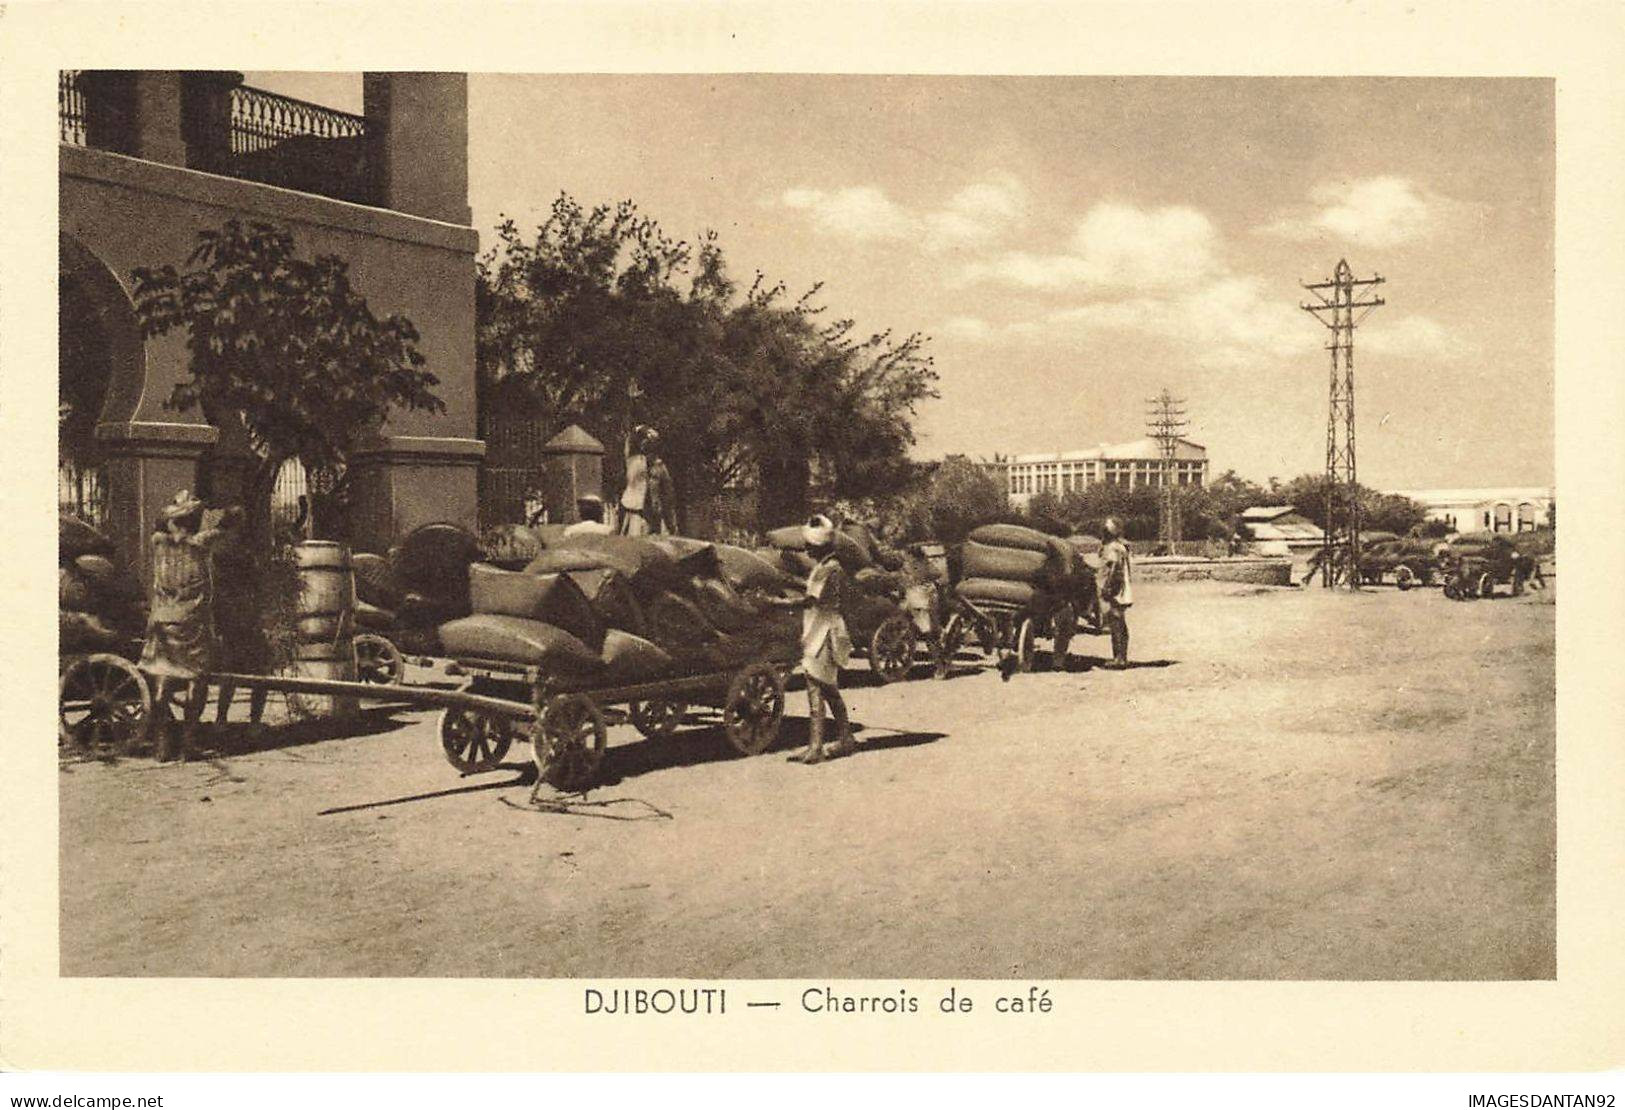 DJIBOUTI #27829 CHARROIS DE CAFE - Djibouti